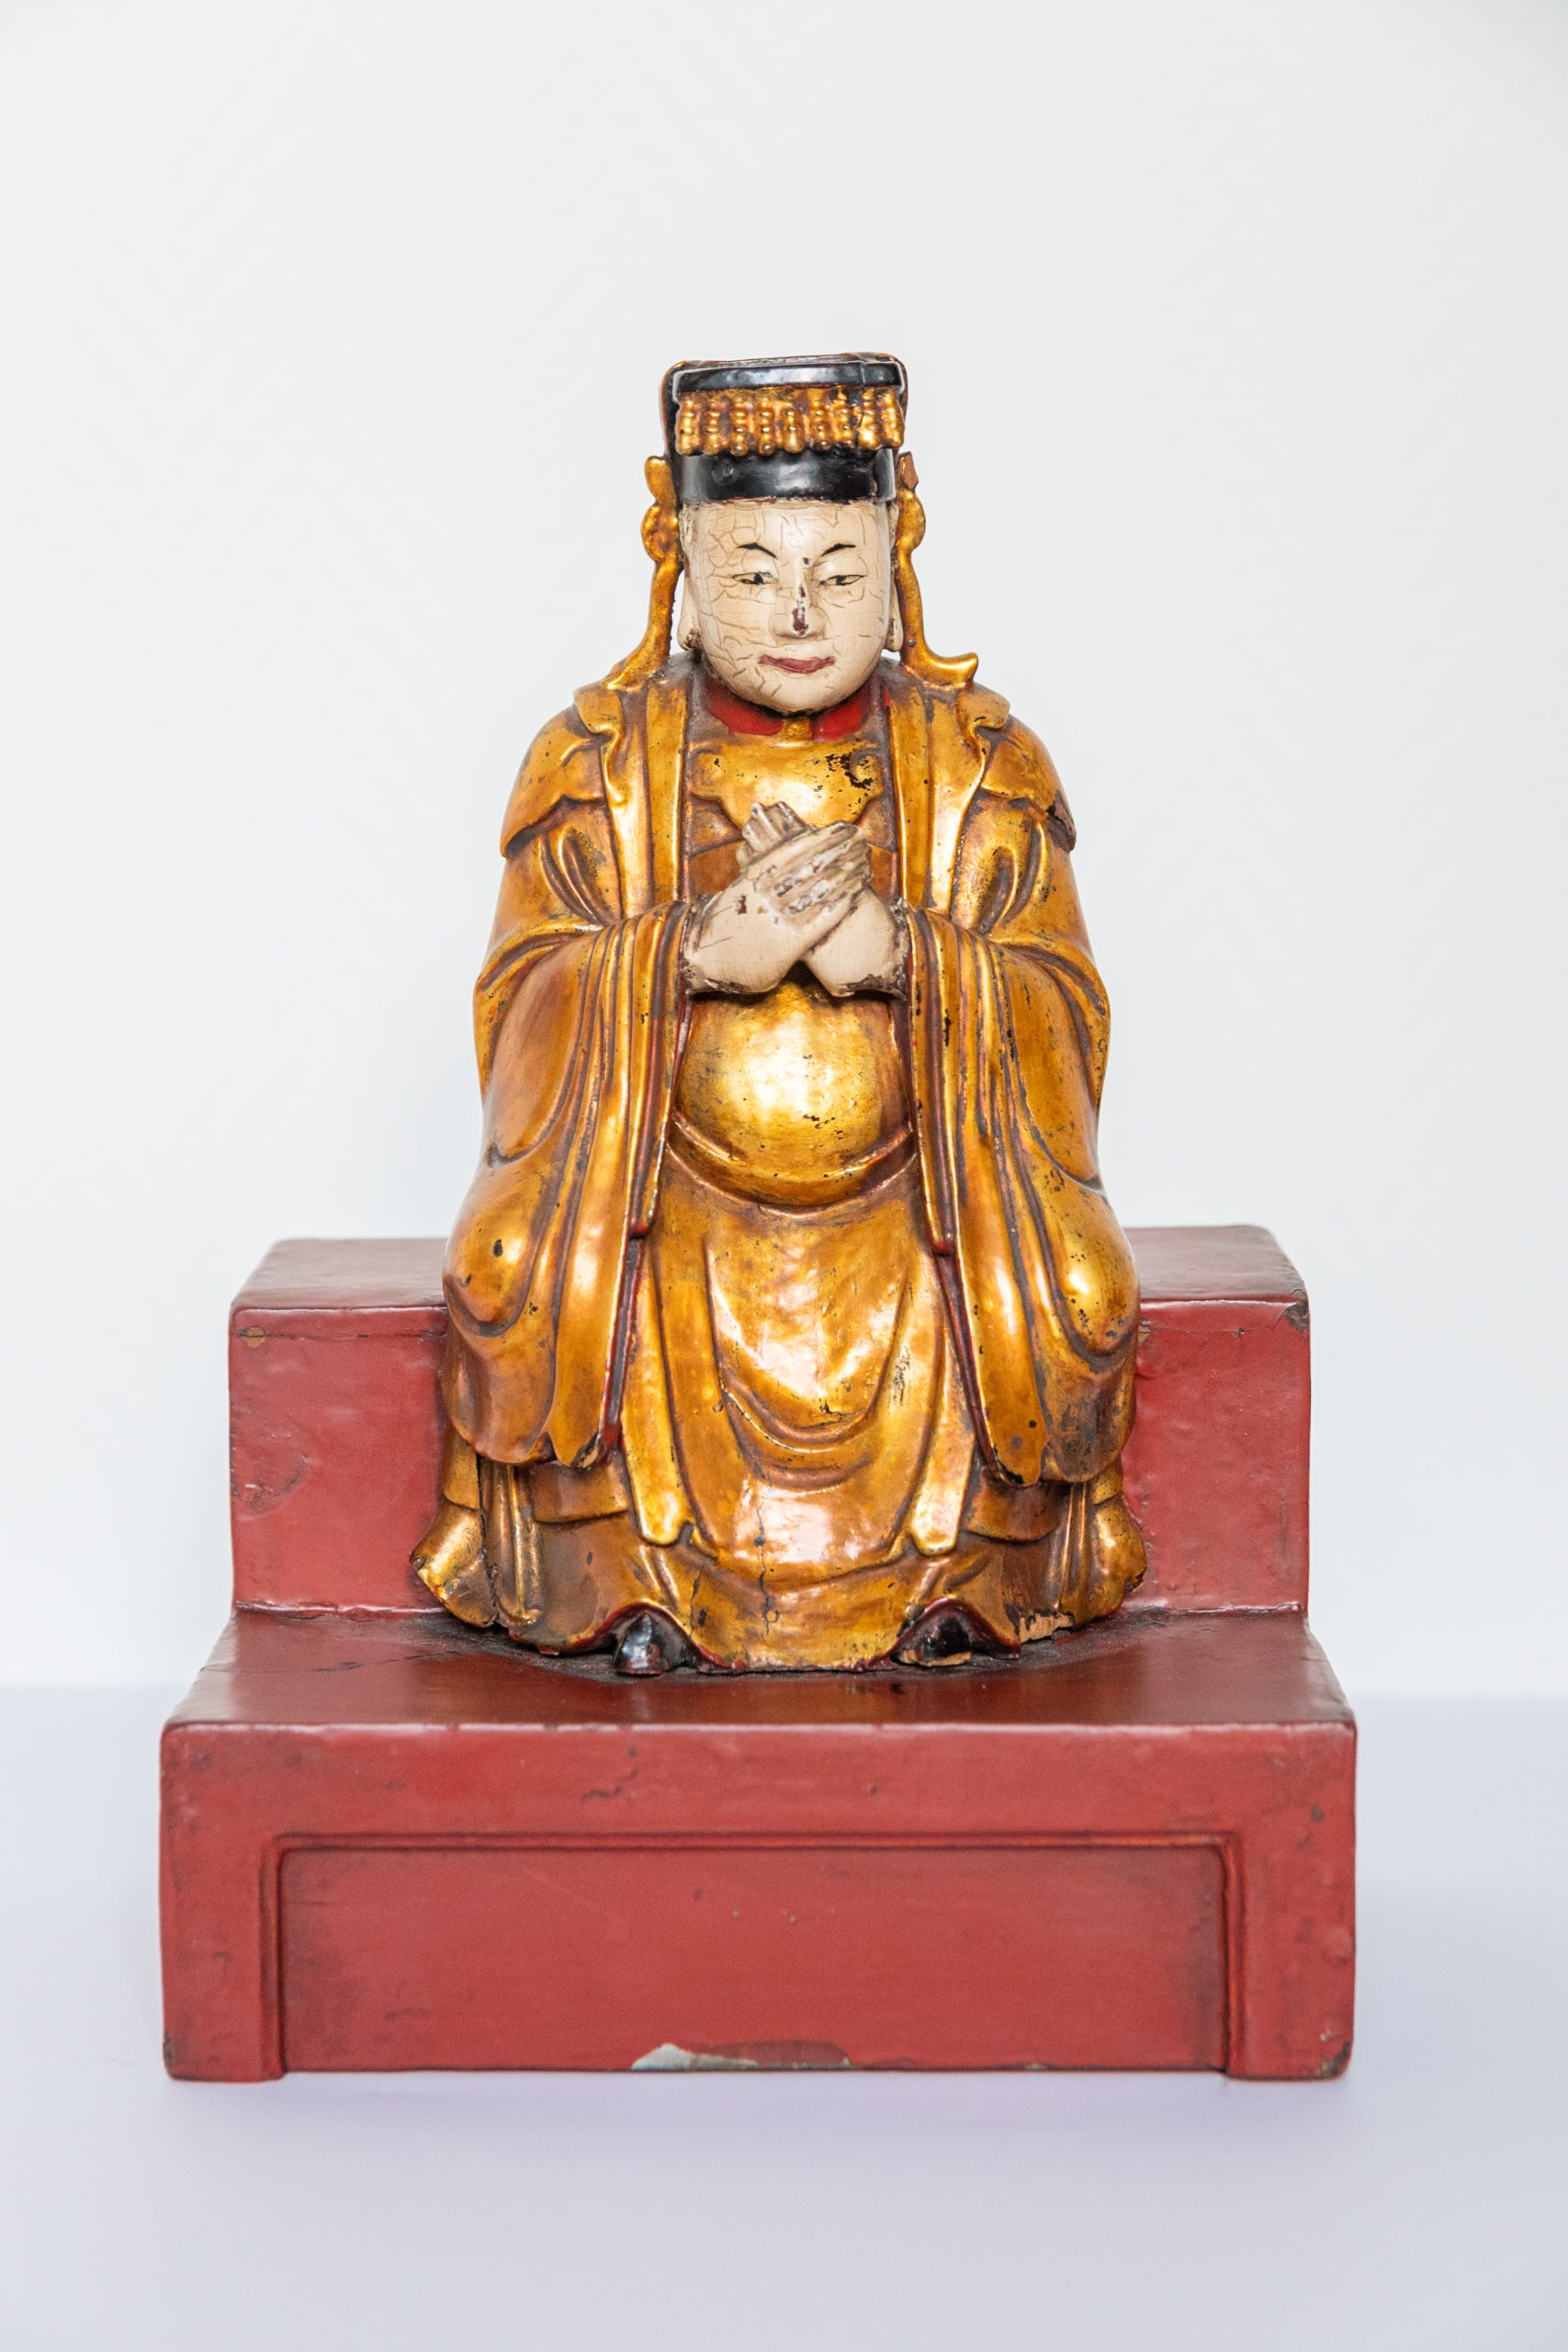 dignitaire-chinois-qing-xixe-chine-bois-sculpture-religieux-boudhisme-art-asie-aurore-morisse1